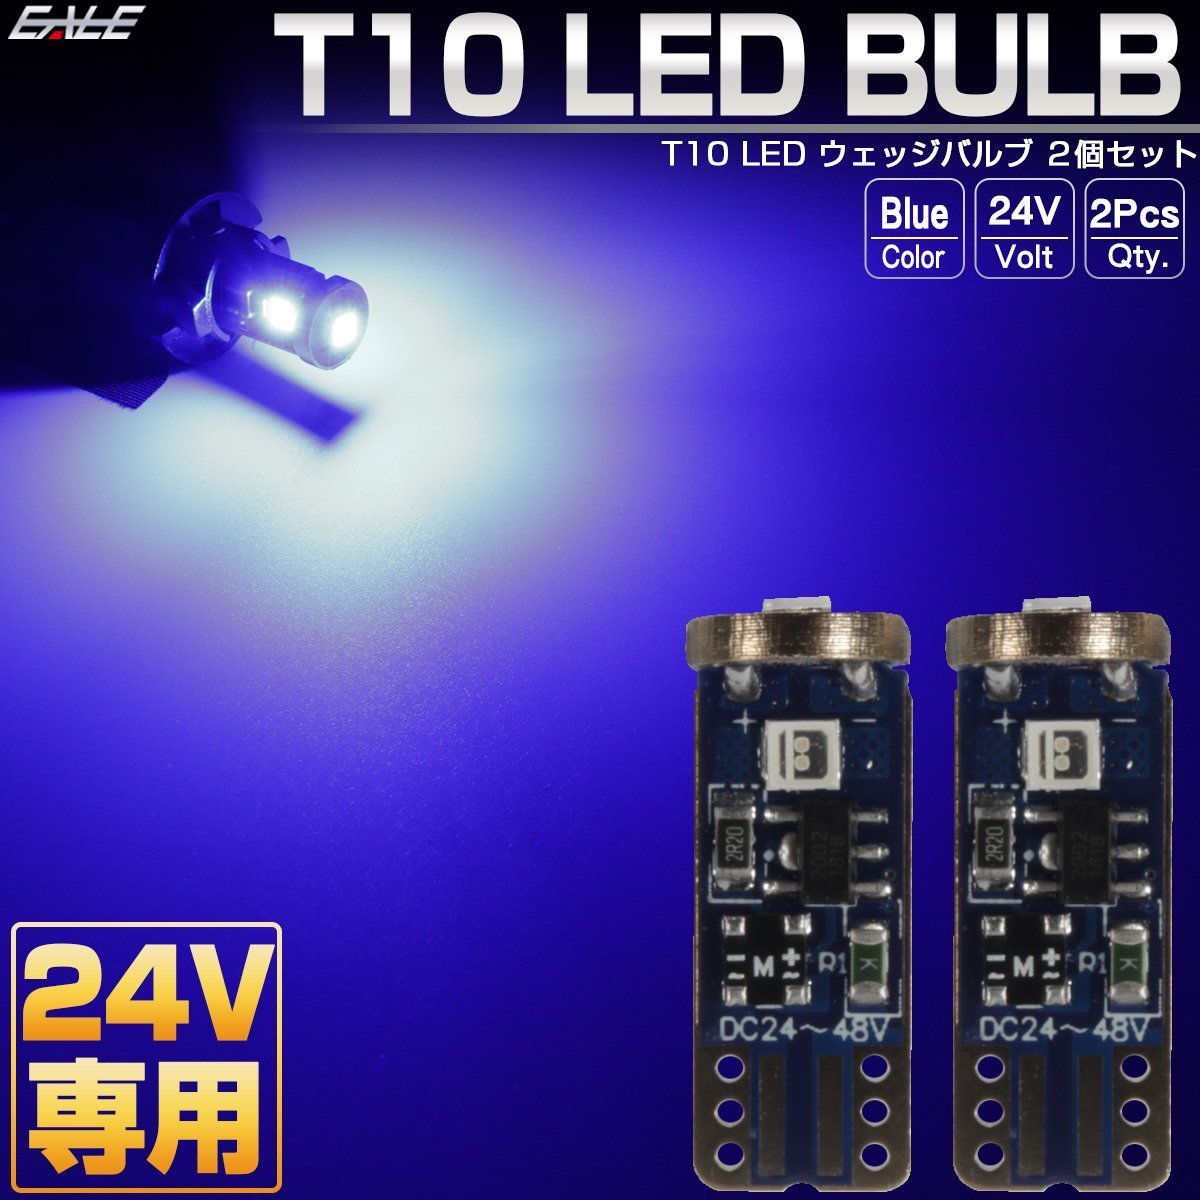 24V専用 T10 LED ウェッジバルブ ブルー 2個セット 超コンパクト 小型 3SMD搭載 トラック ポジション球やマーカーランプに A-158_こちらはブルーの出品です。